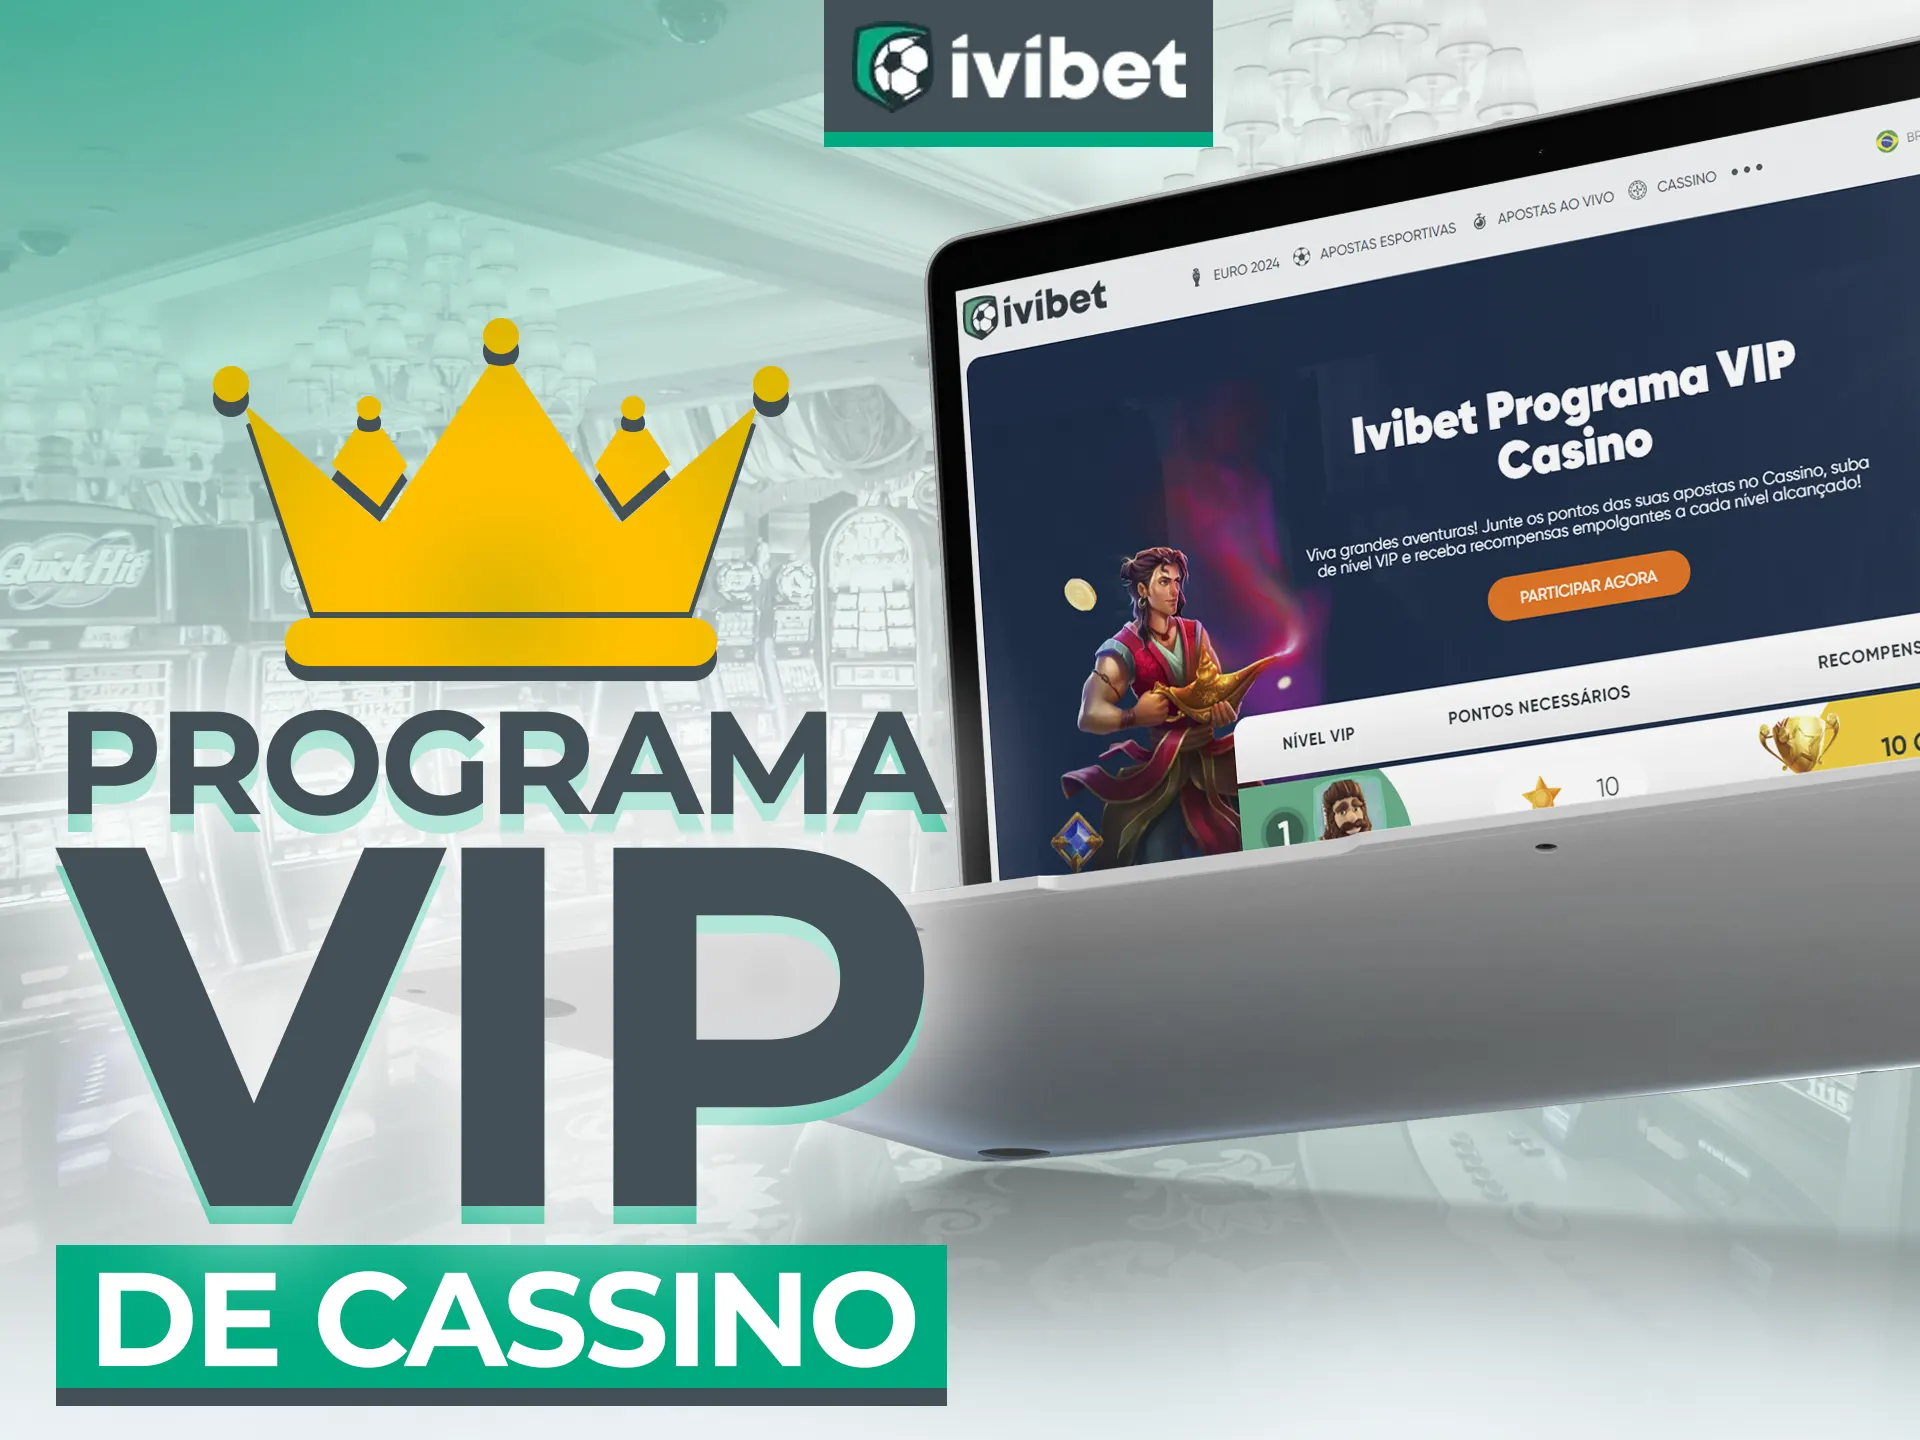 Níveis VIP da Ivibet oferecem recompensas exclusivas